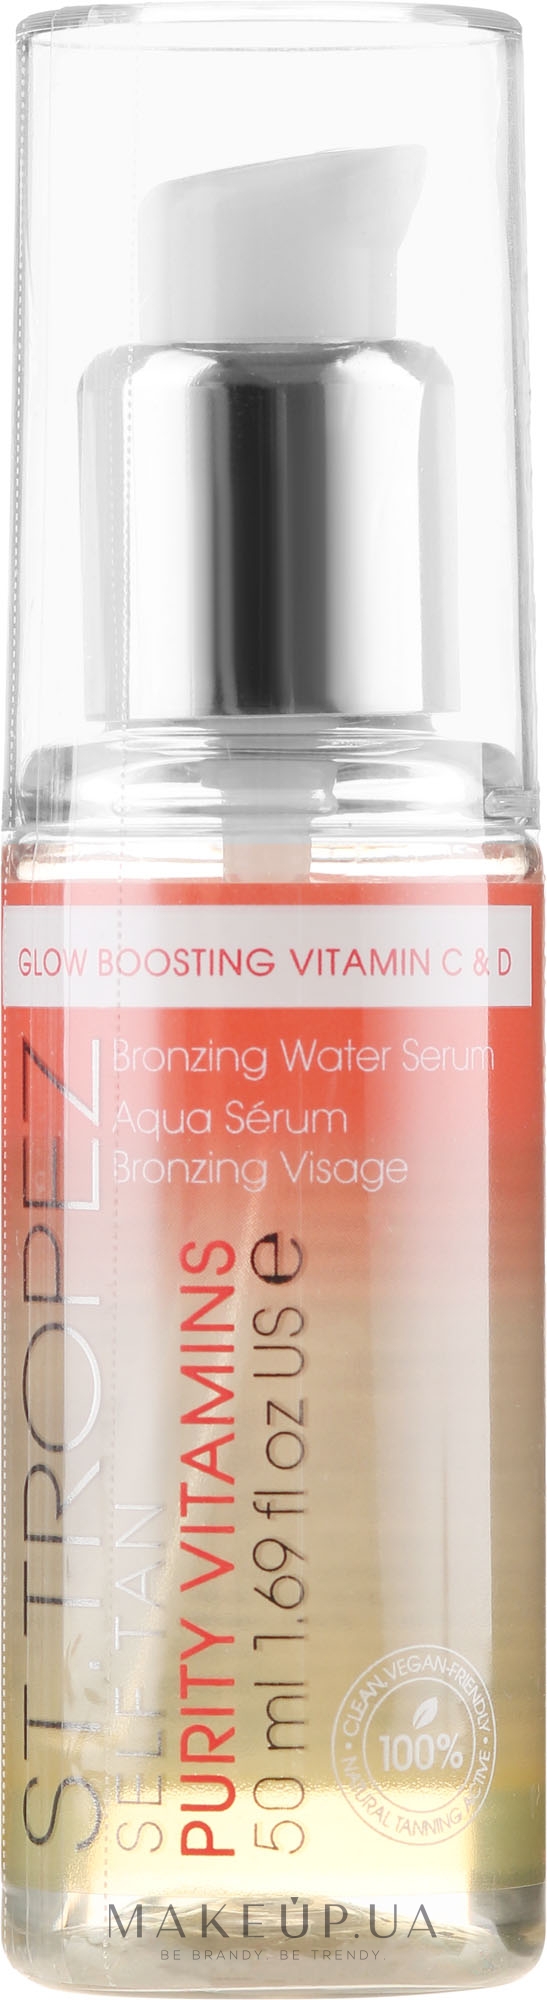 Вітамінна бронзувальна сироватка для обличчя - St. Tropez Self Tan Purity Vitamins Bronzing Water Serum — фото 50ml